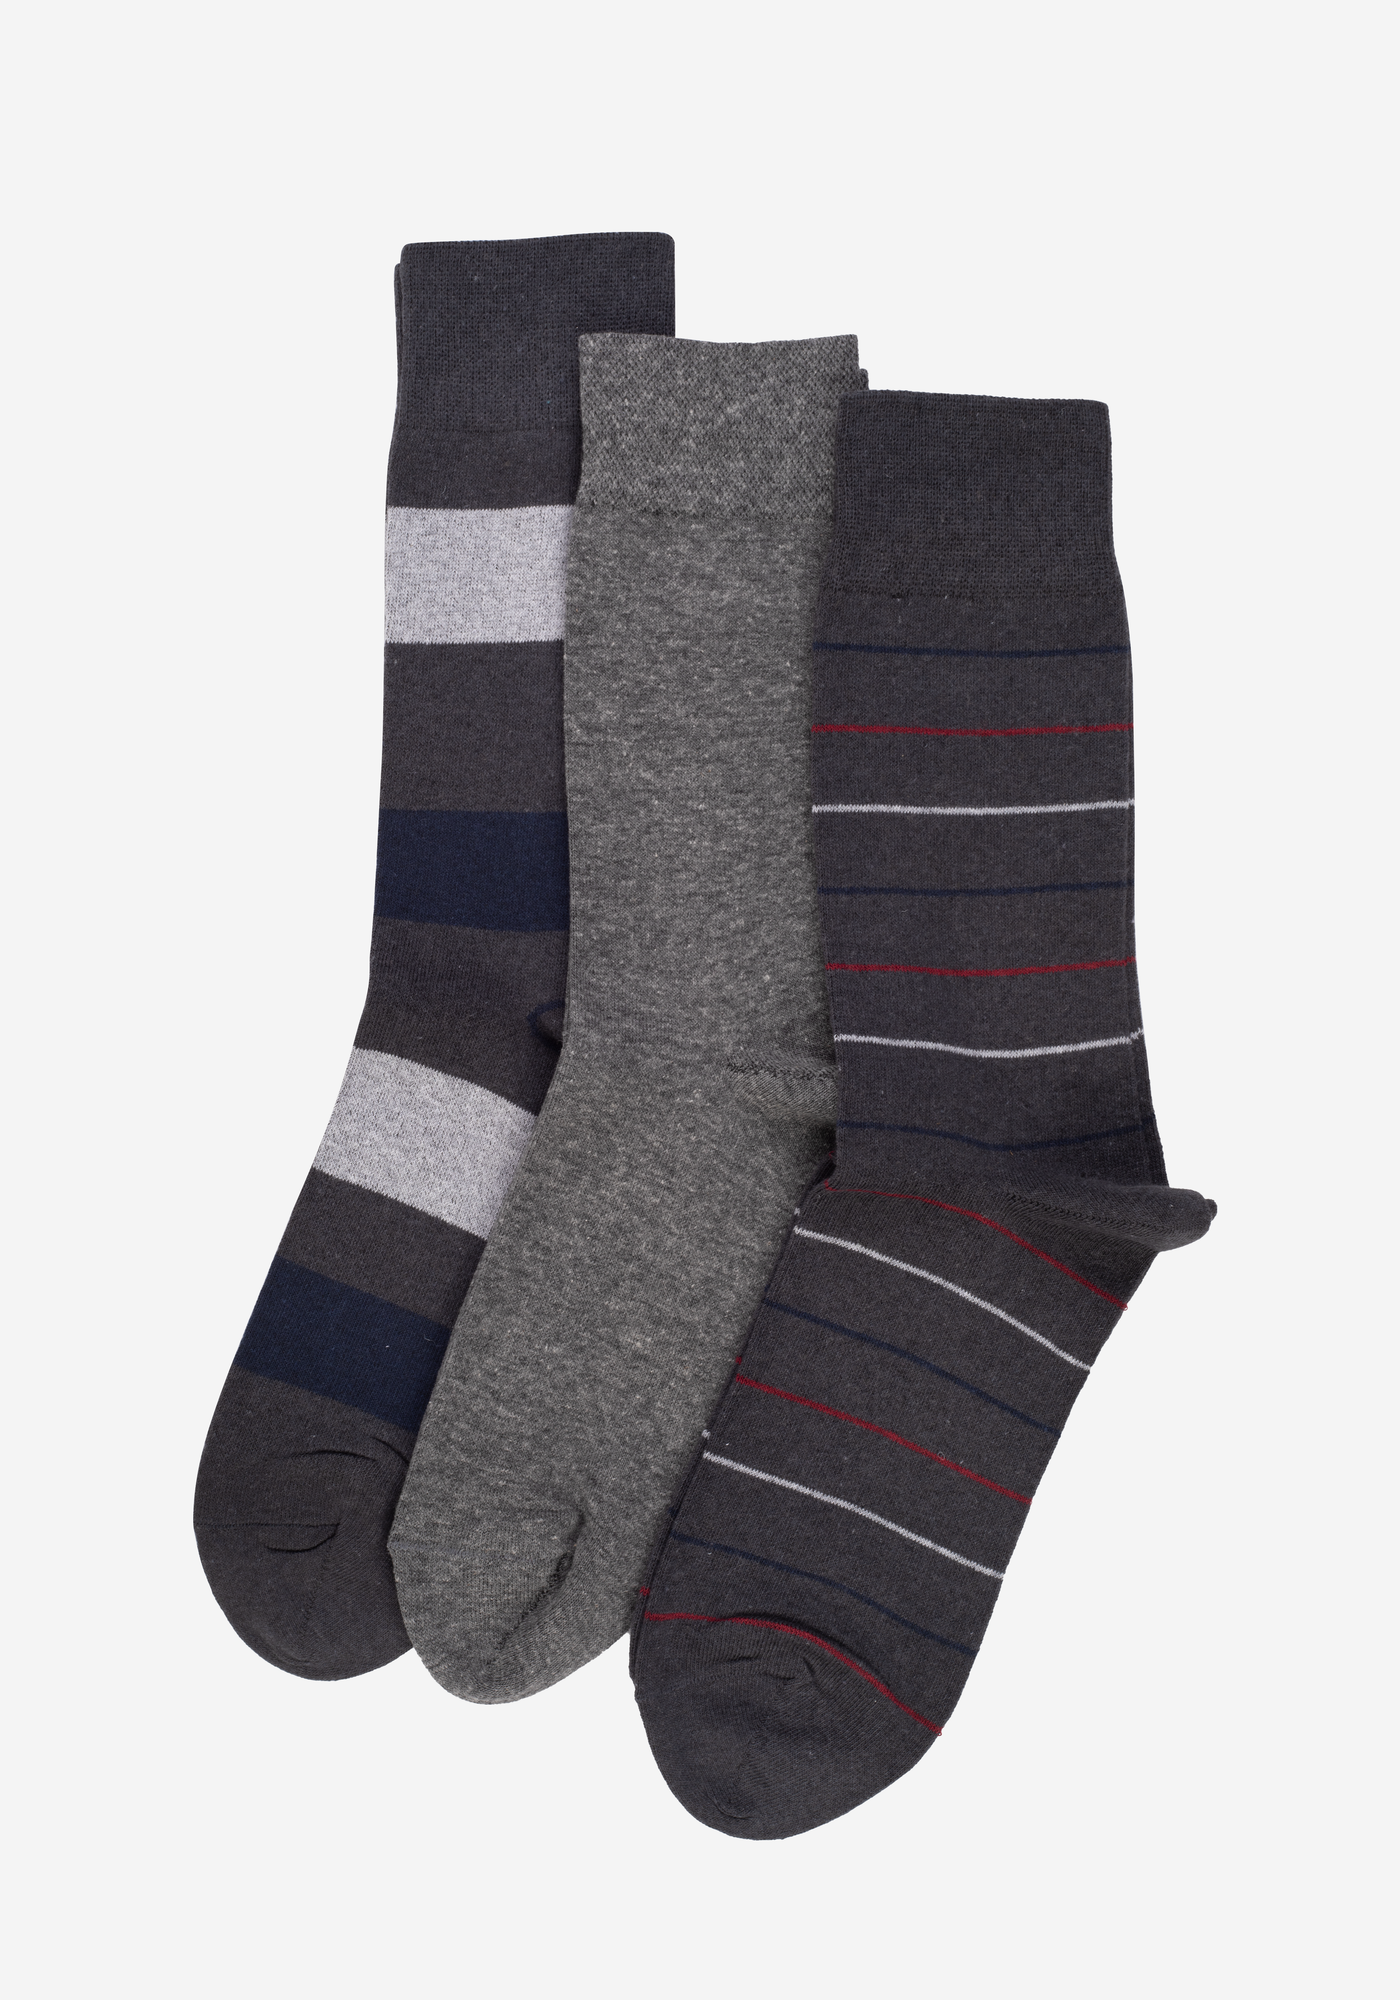 P3*1-319-9 / 3 Long Socks Pack